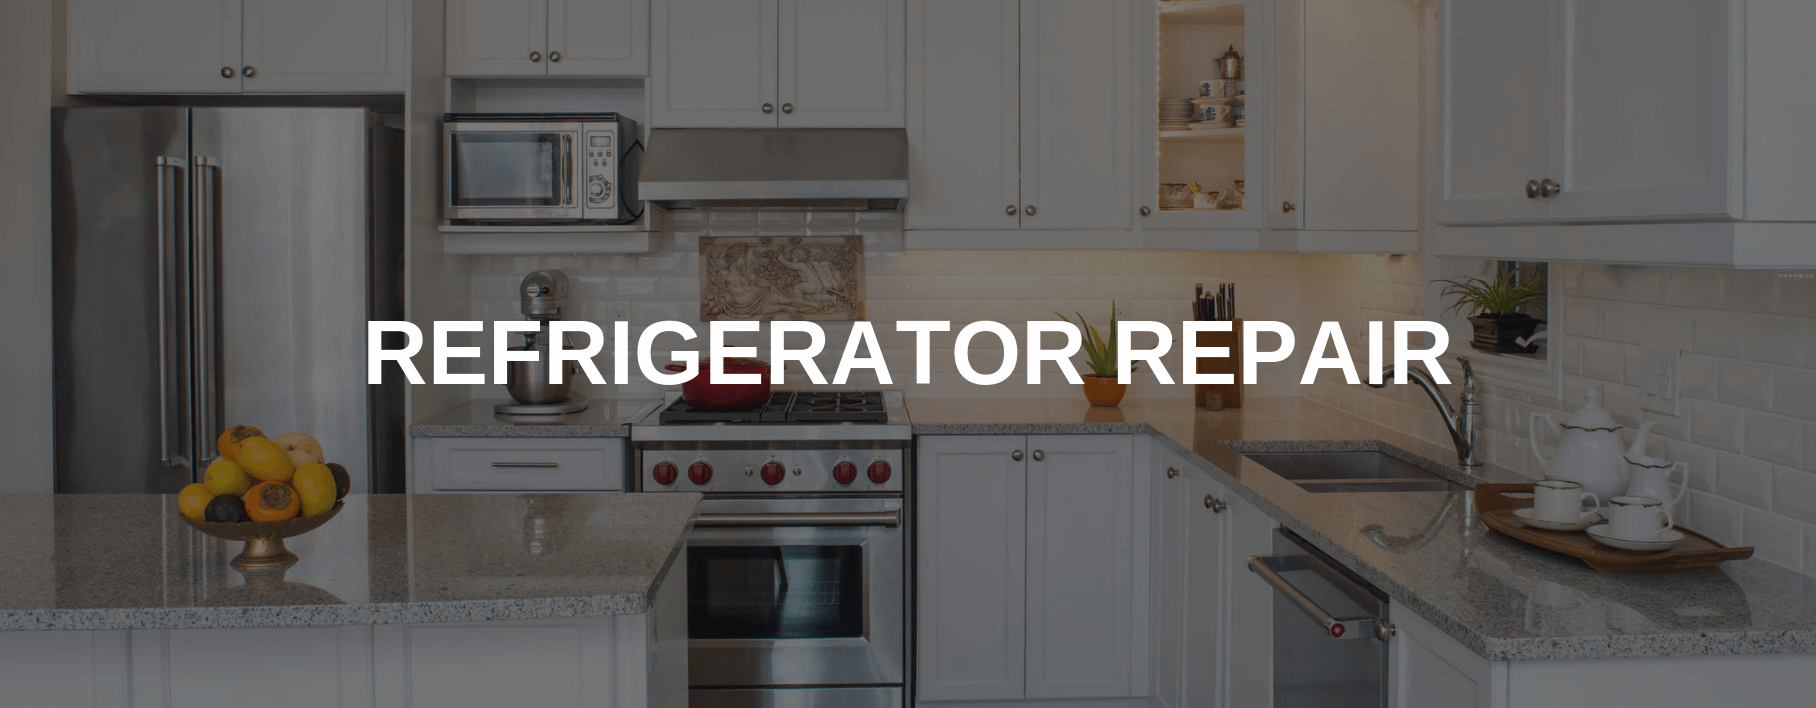 refrigerator repair east hartford